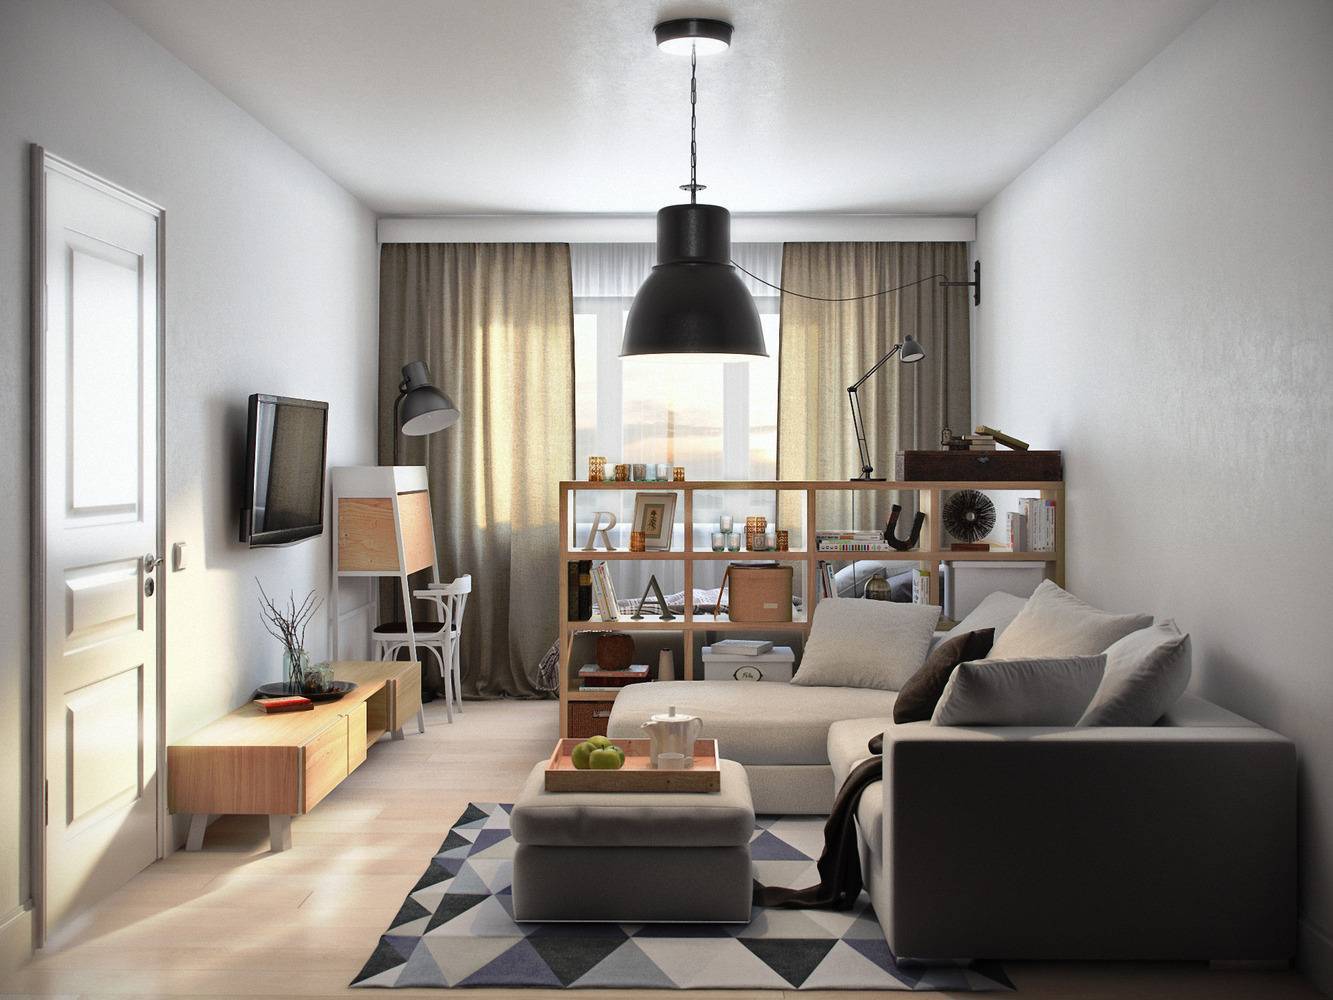 Варианты расстановки мебели в однокомнатной квартире, советы дизайнеров | мебельный журнал - все о мебели